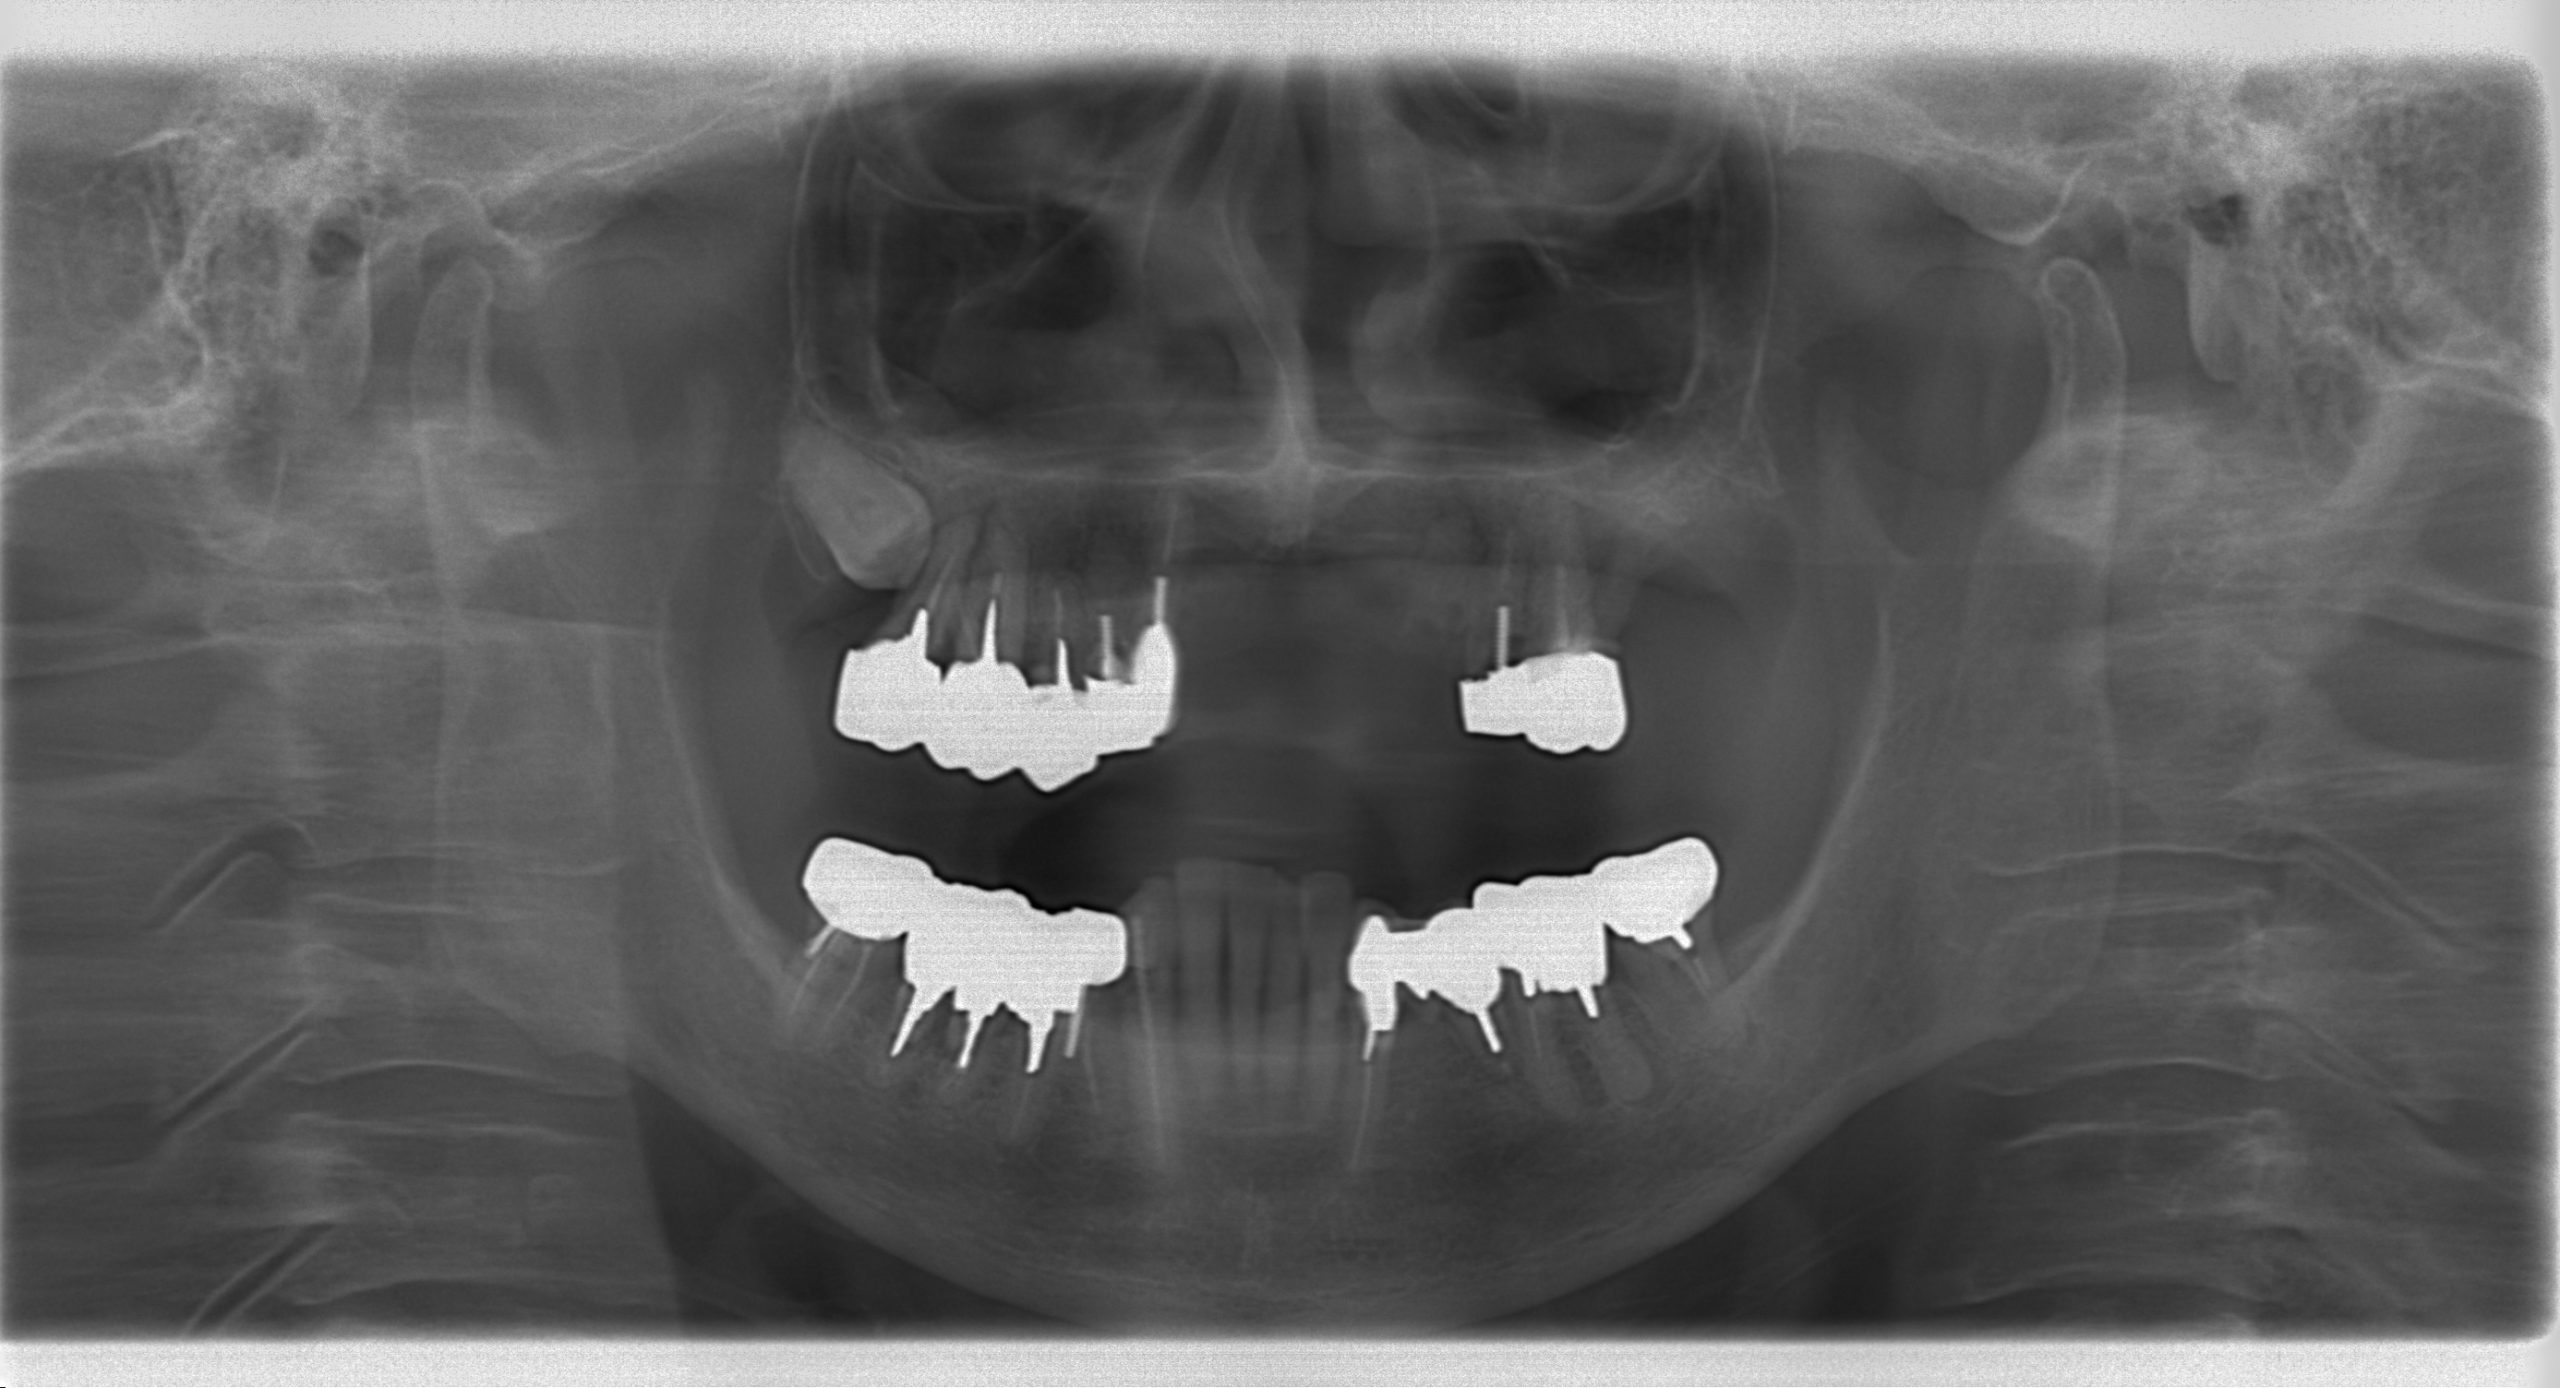 嘔吐反射が強く義歯が使えないためコーヌスデンチャーで治療した症例